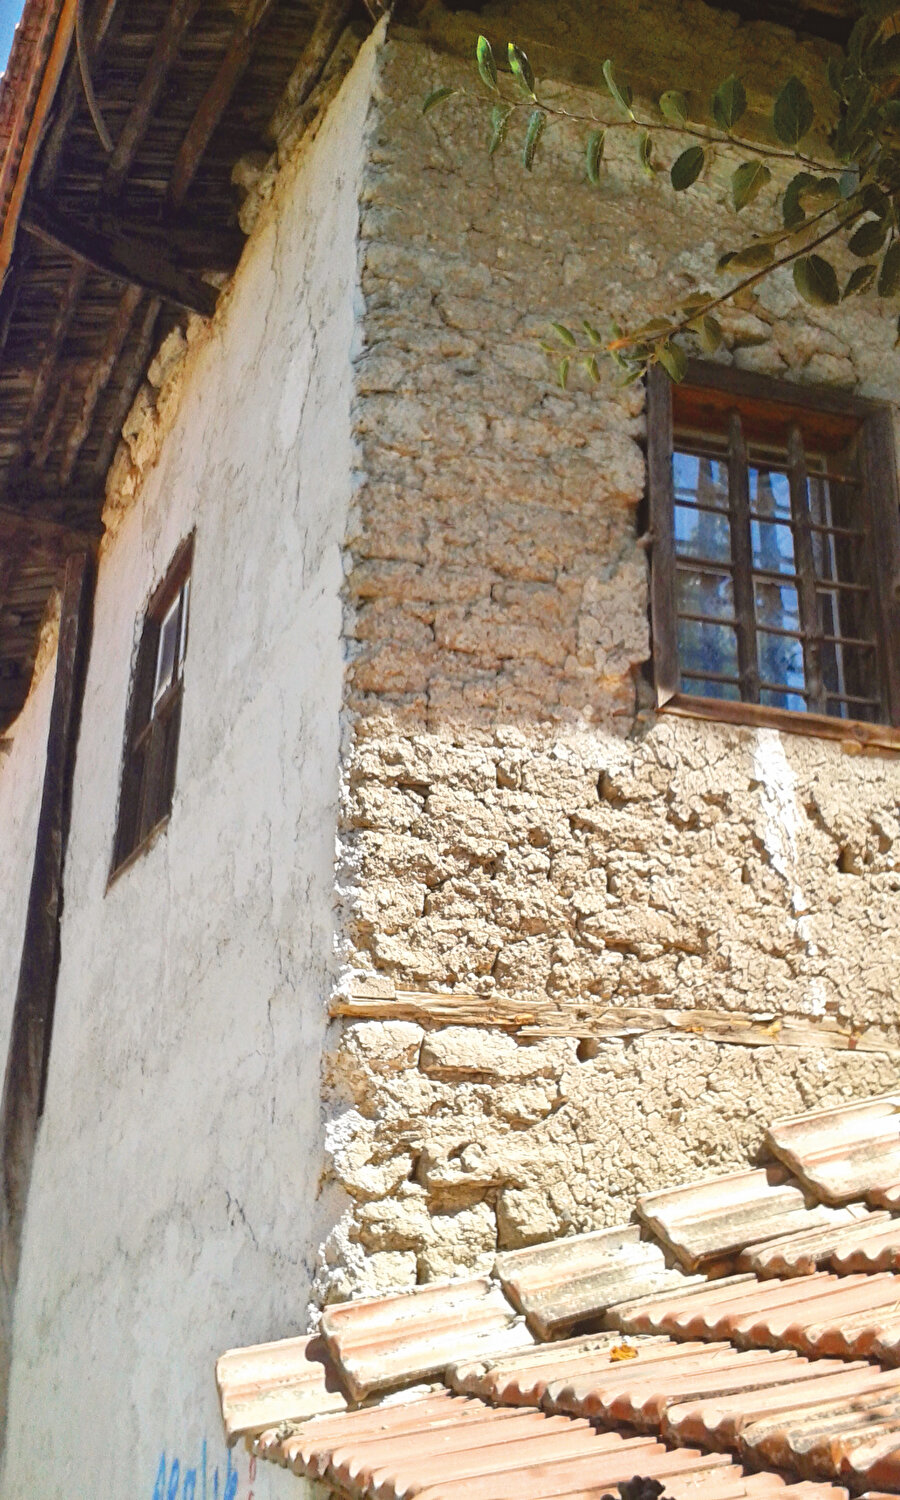 Merhumun hane-i saadeti, vazife yerinin hemen çaprazında. Kullanışlı ve zarif işçilikle bezeli bu mesken, sahibine yukarıdan bakmayan tipik bir Türk evi.